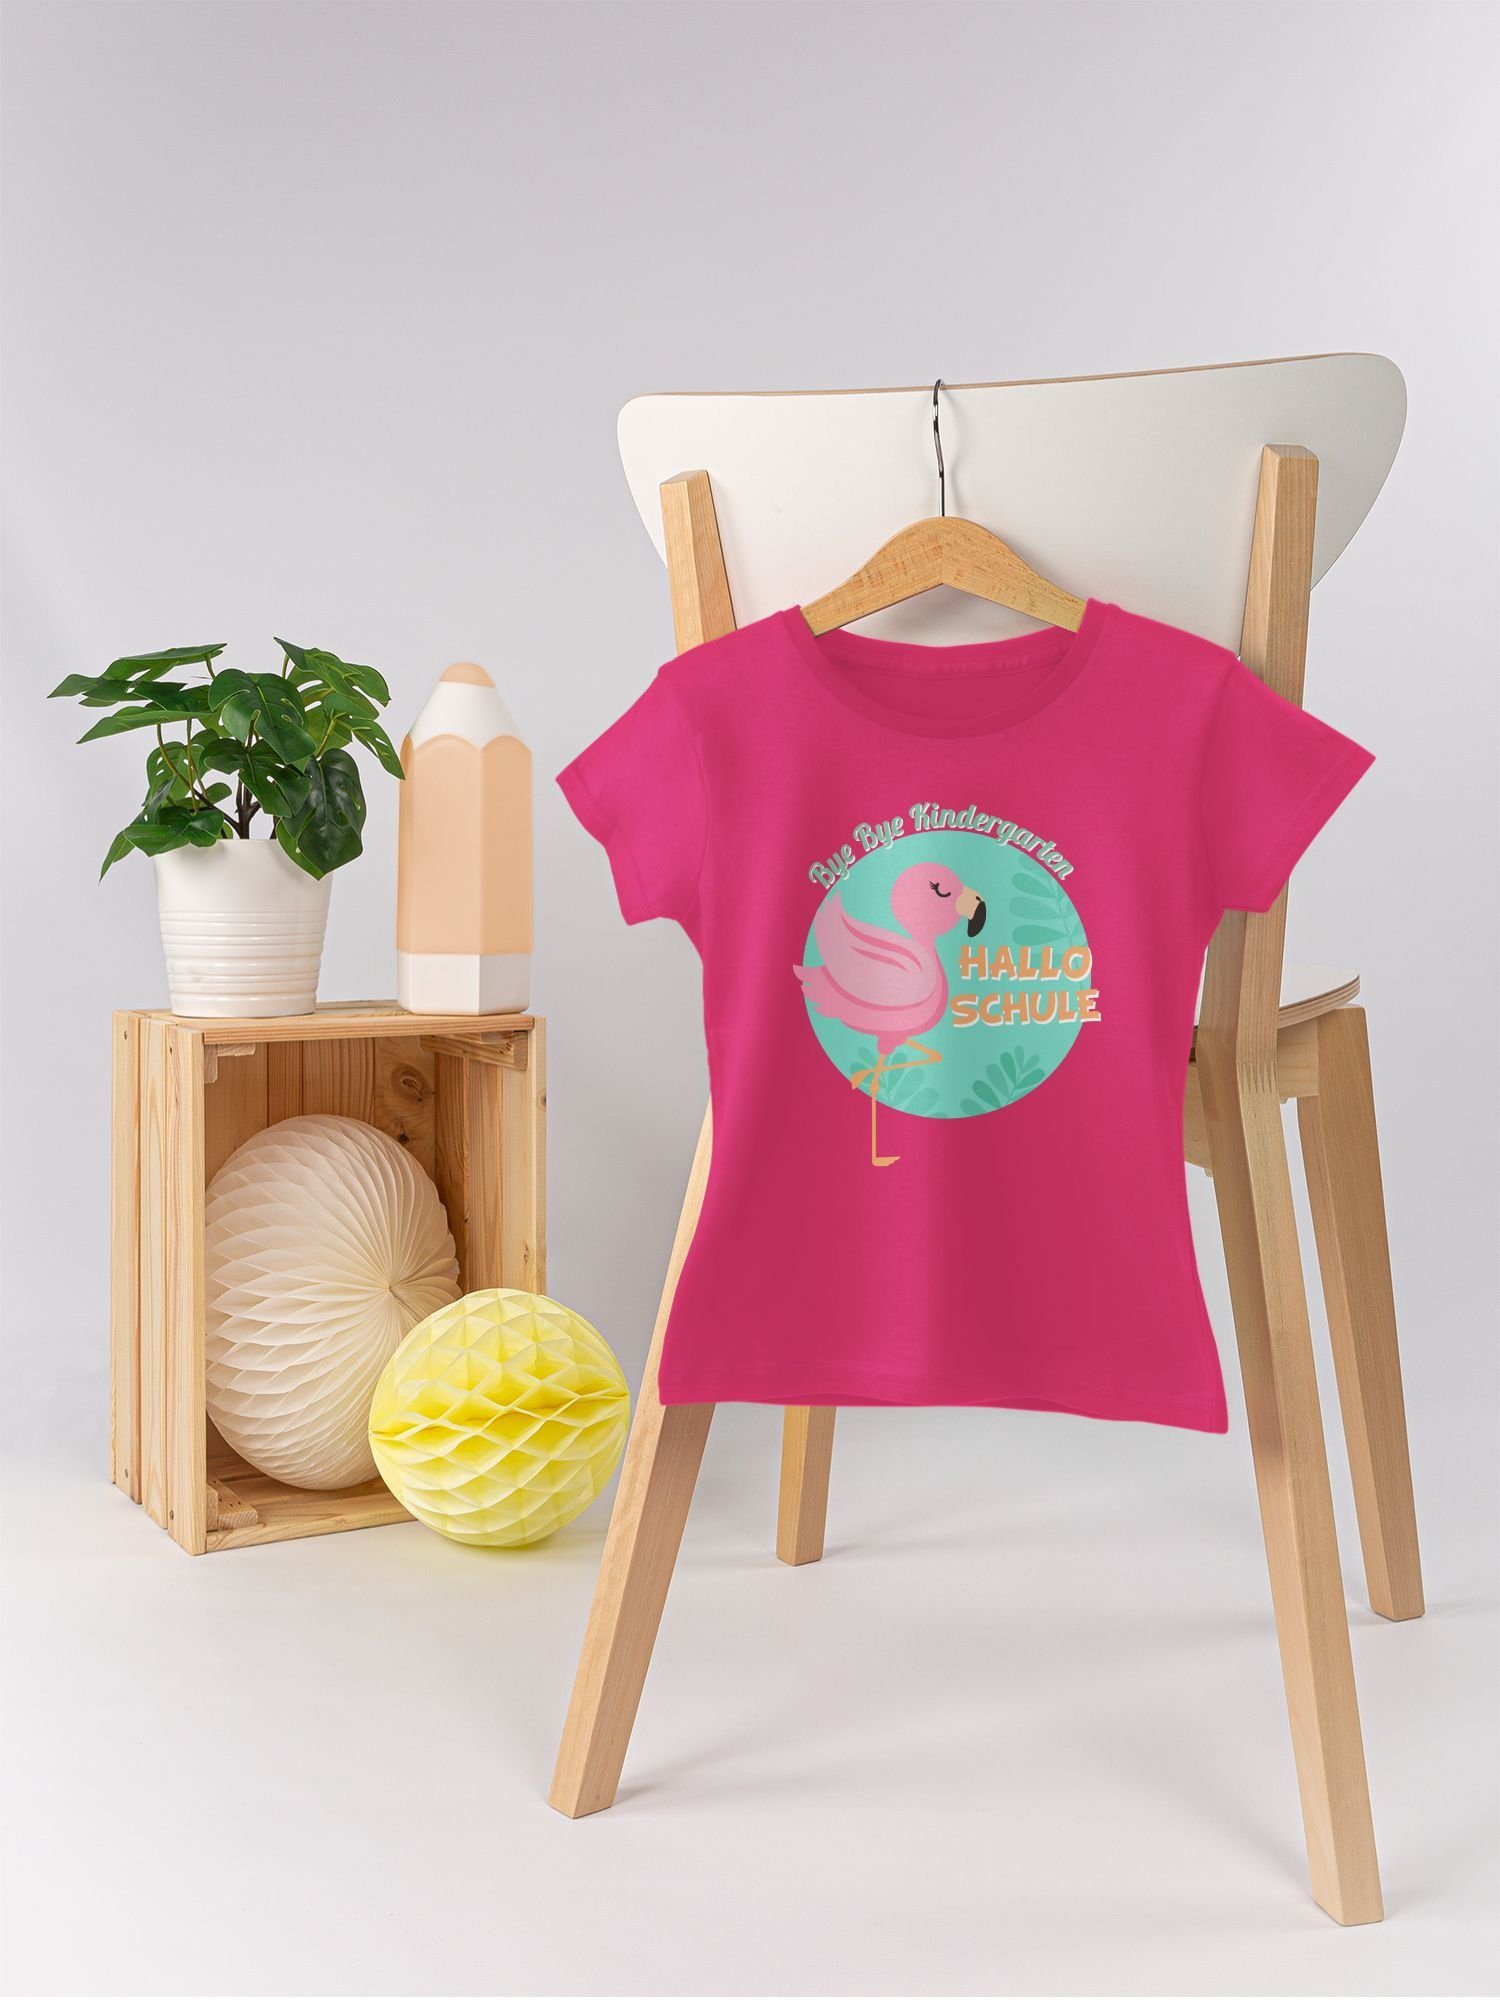 Bye Bye Mädchen Flamingo T-Shirt Einschulung Hallo 1 Shirtracer Schule Fuchsia Kindergarten